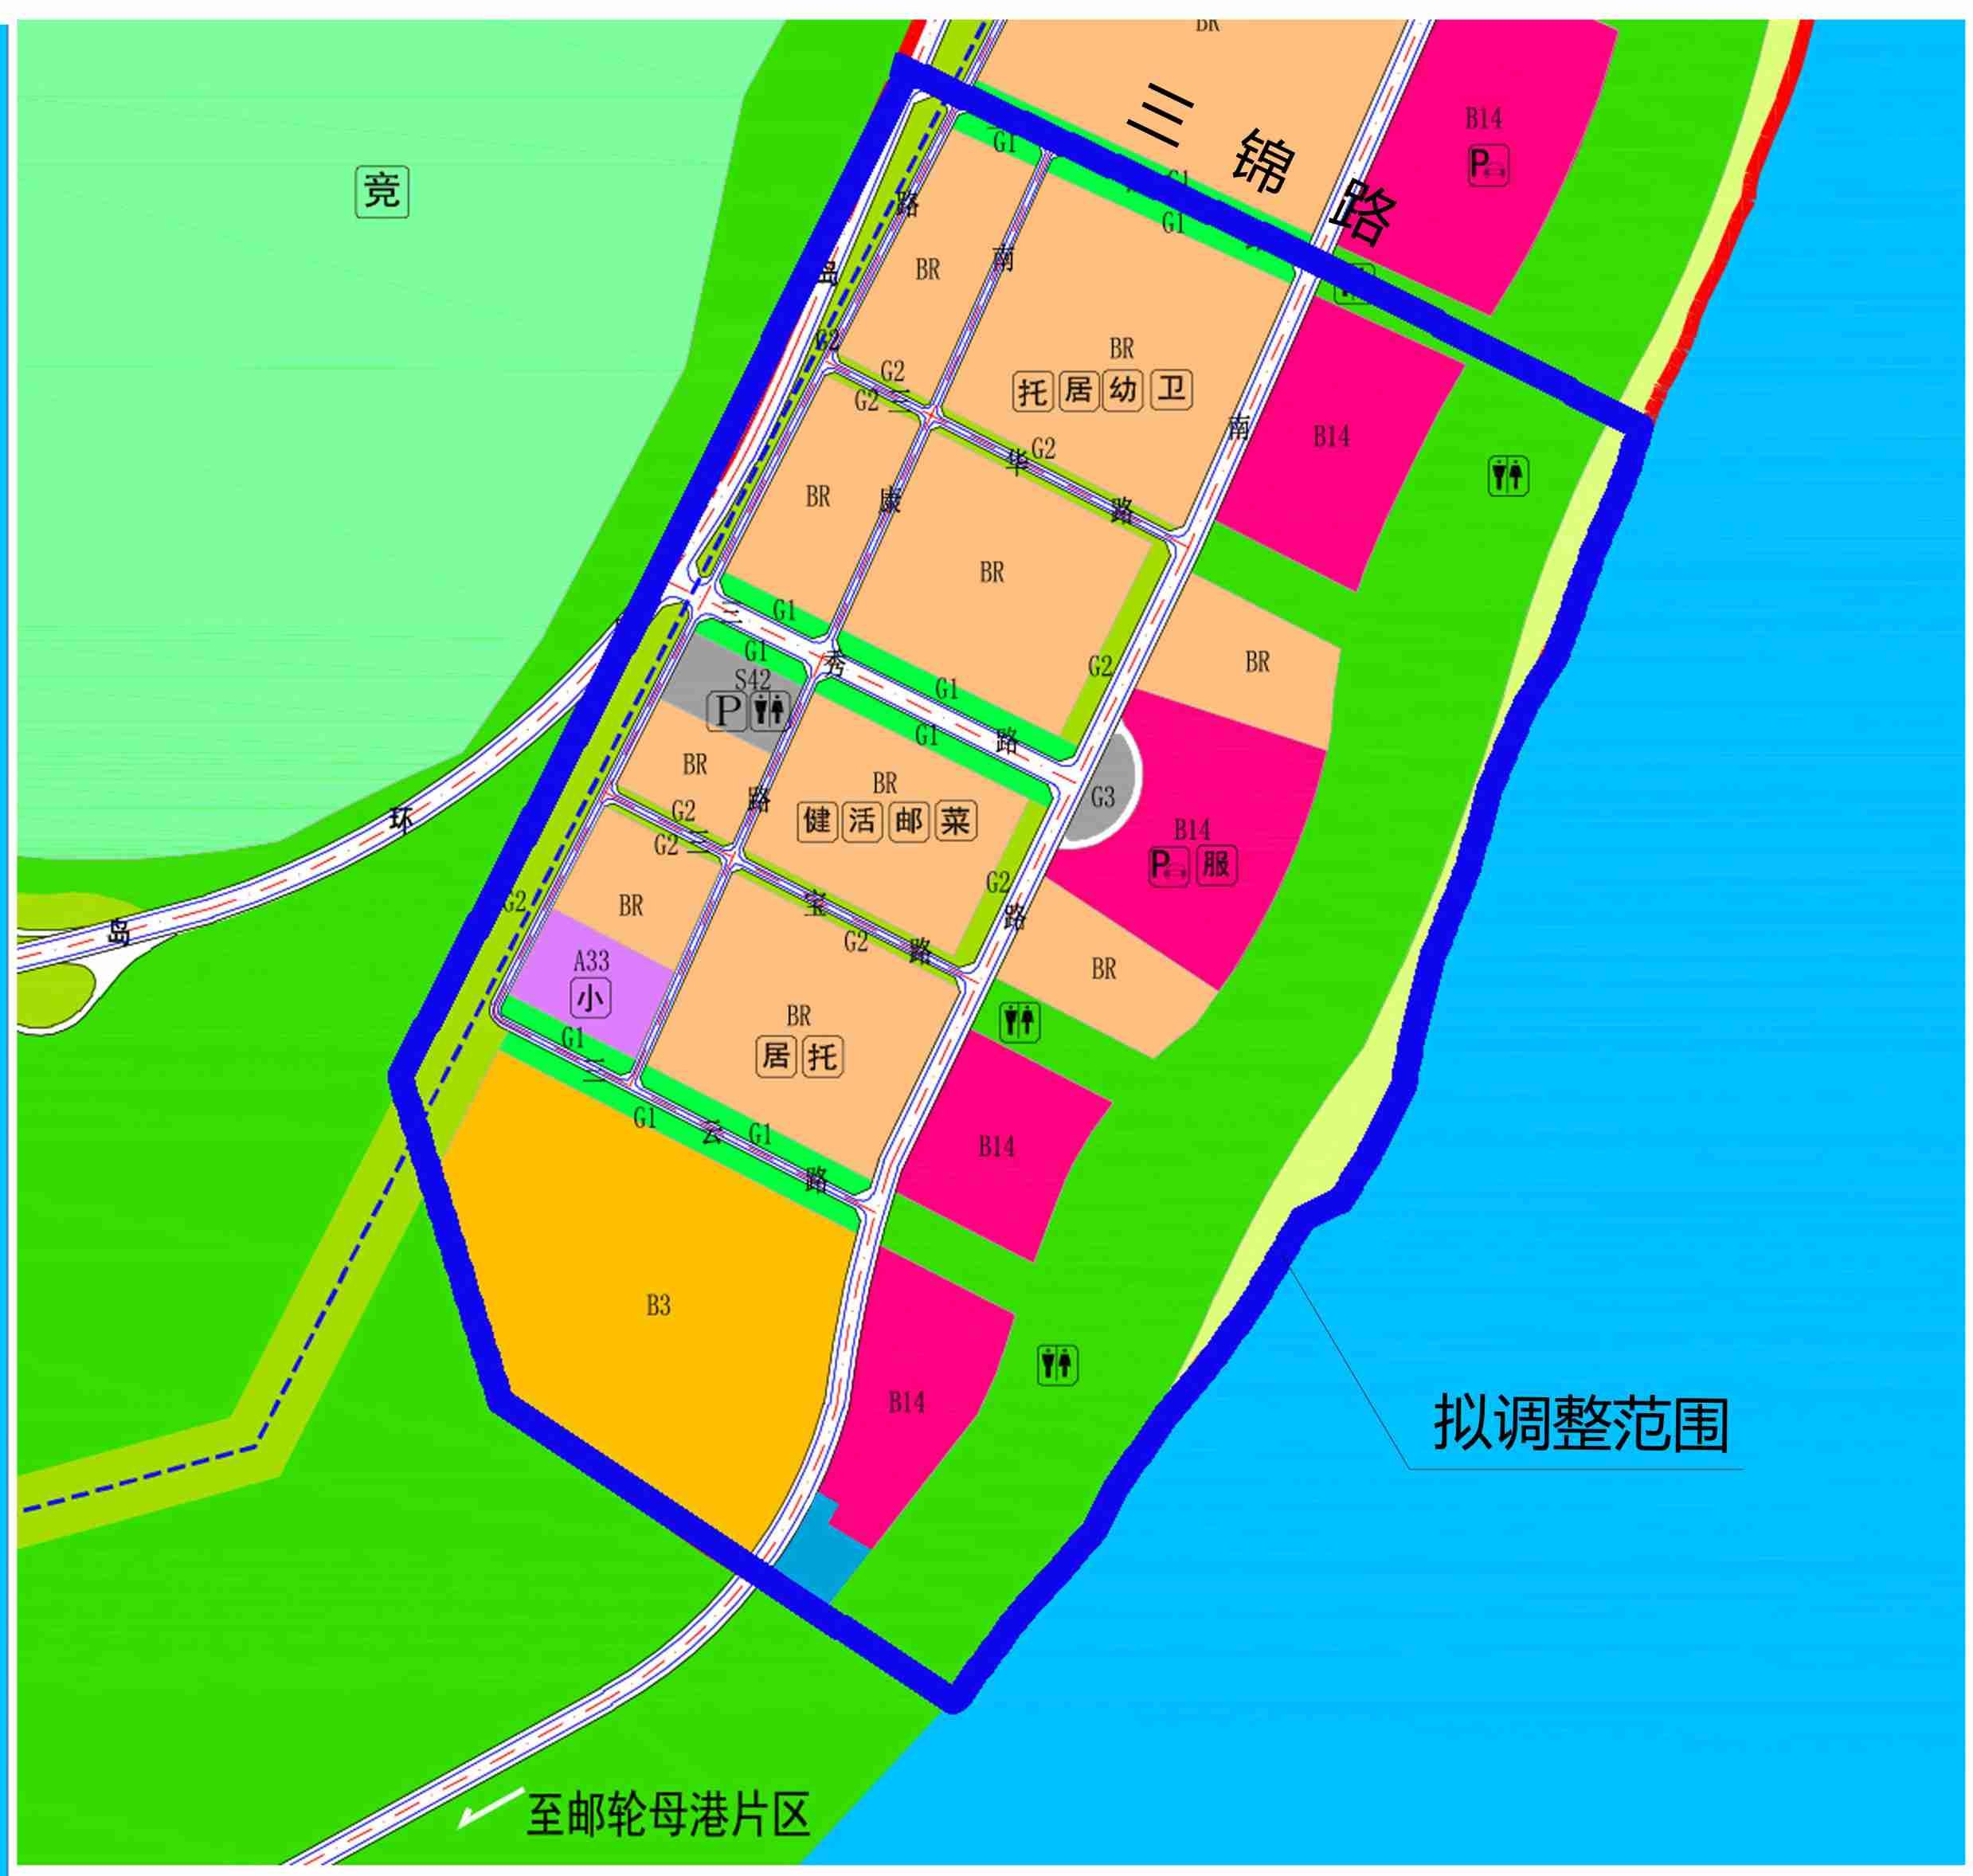 湛江市南三岛东部滨海旅游度假区片区地块调整公示：调整范围面积约为2.3平方公里